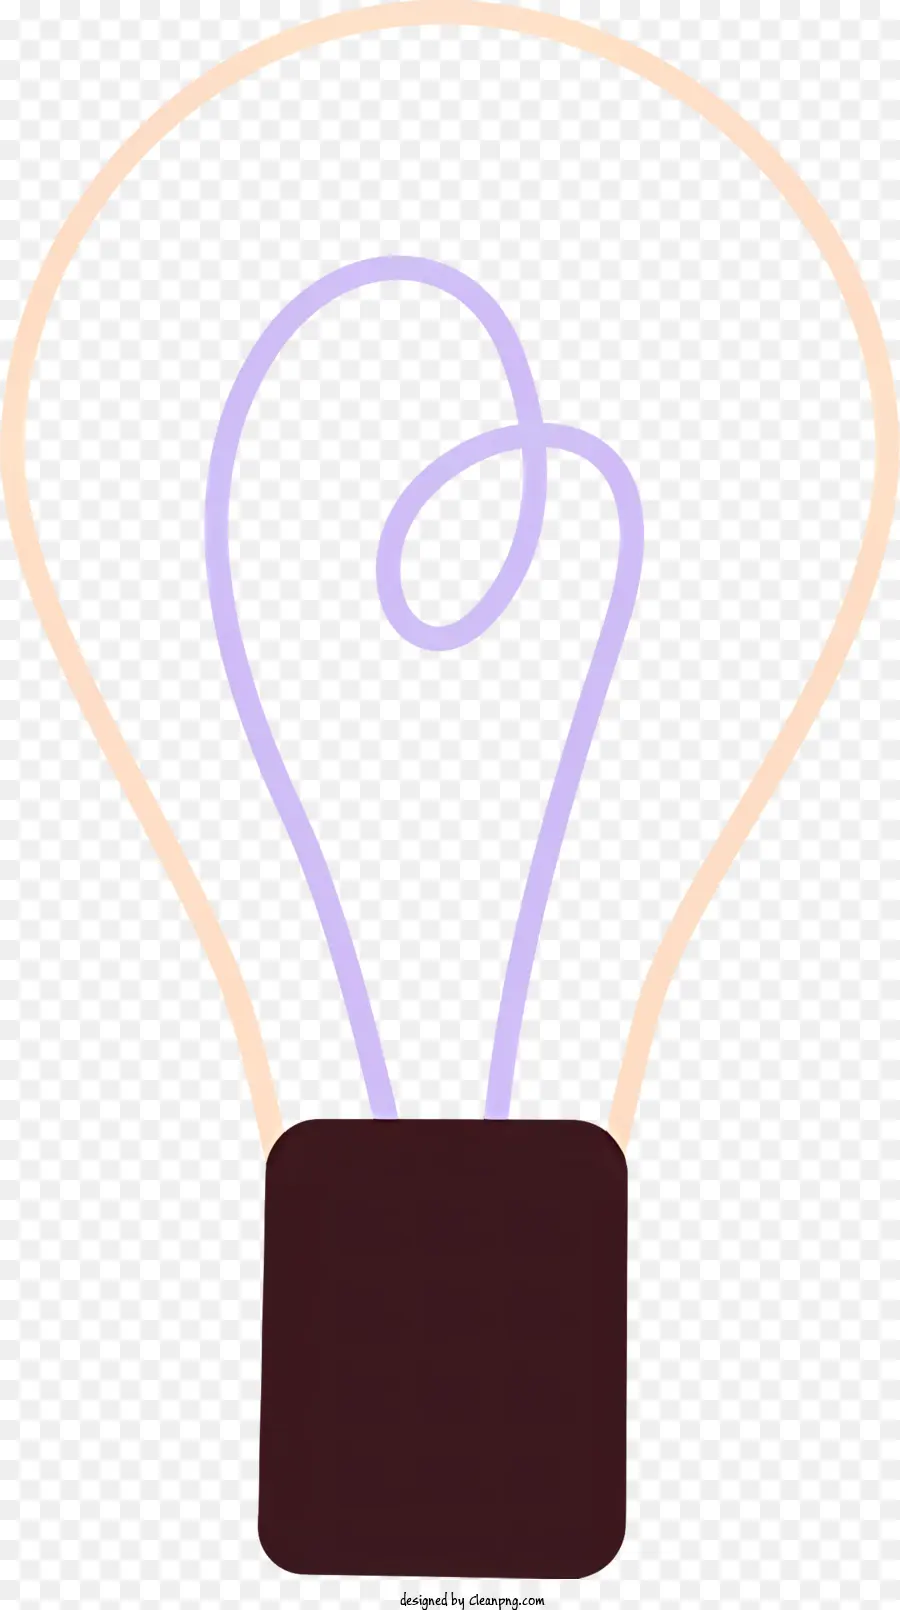 A Lâmpada De Luz，Lamp PNG